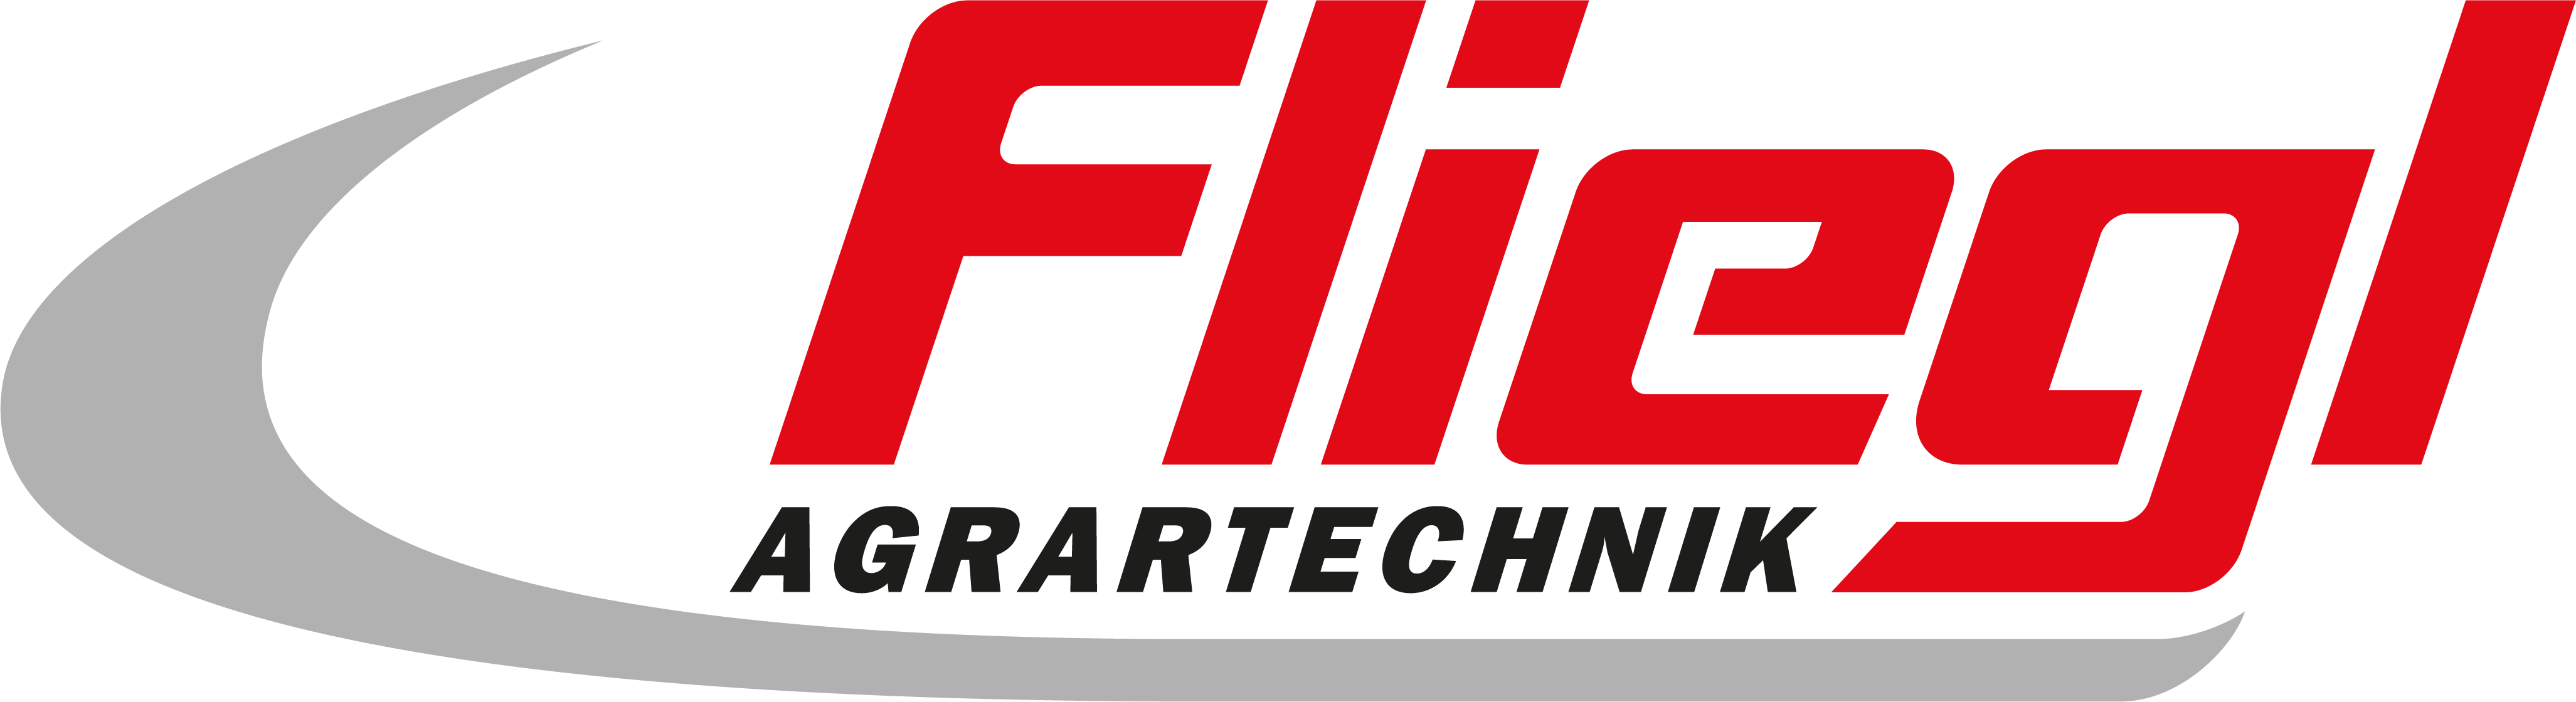 Logo Fliegl Agrartechnik